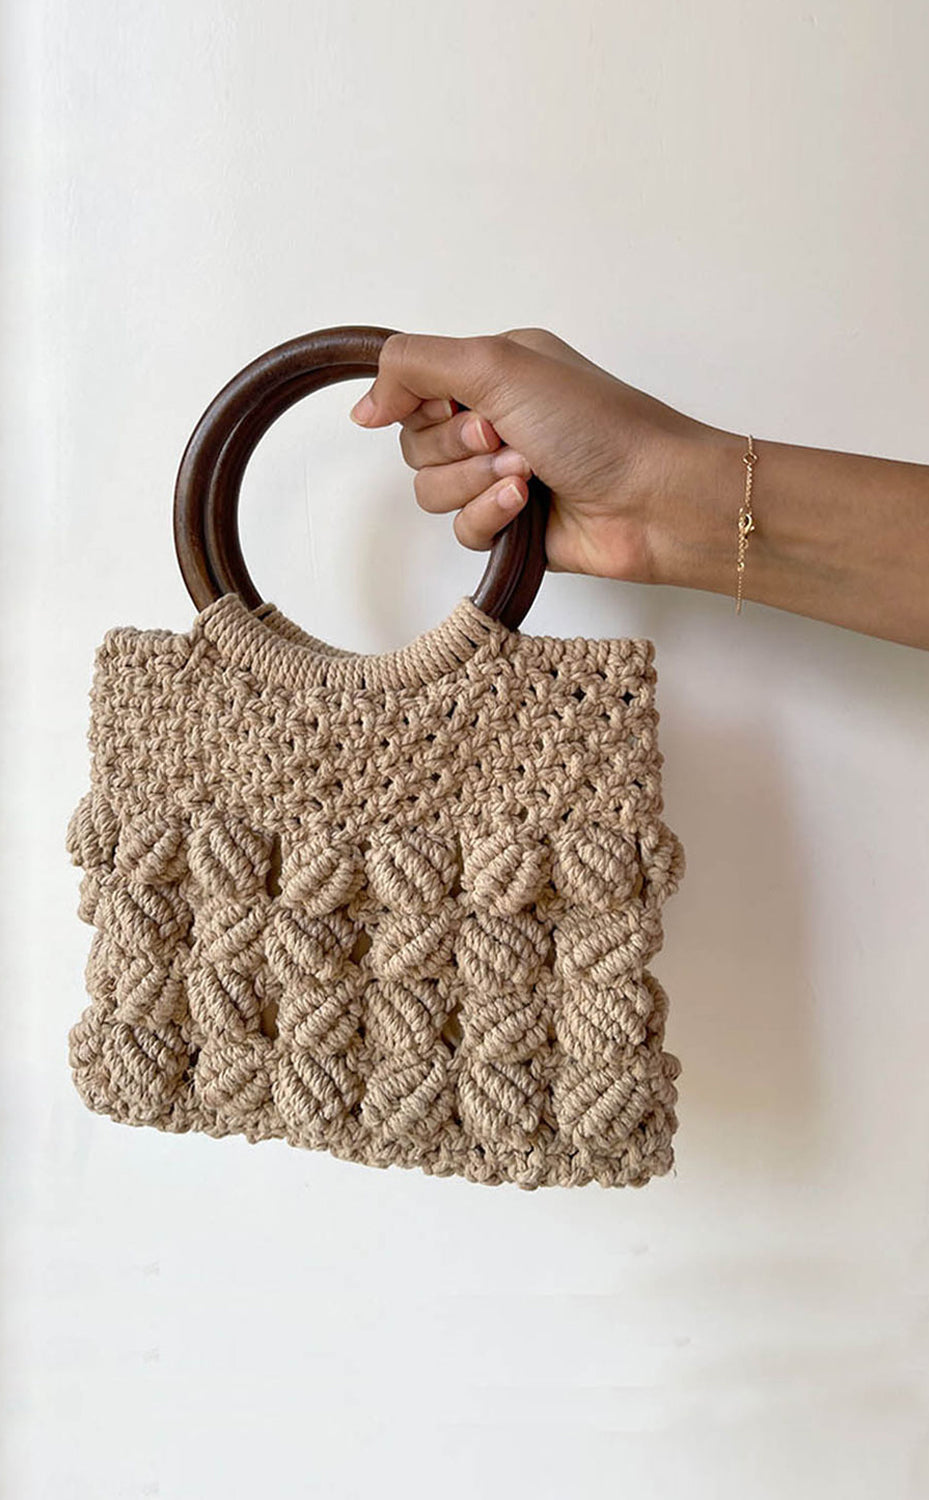 Macrame bag making tutorial | Macrame Shoulder bag | sangitas craft -  YouTube